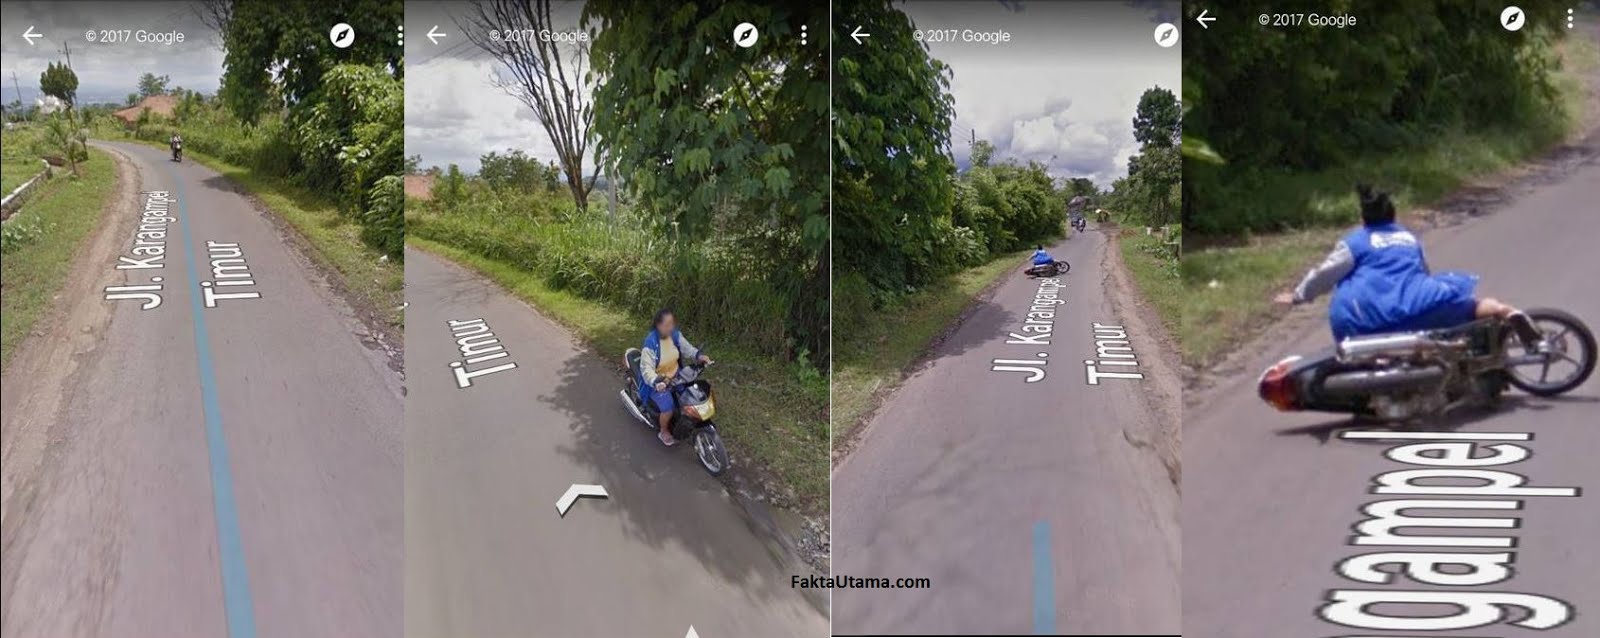 Foto Lucu Di Google Street View Gokil Abis